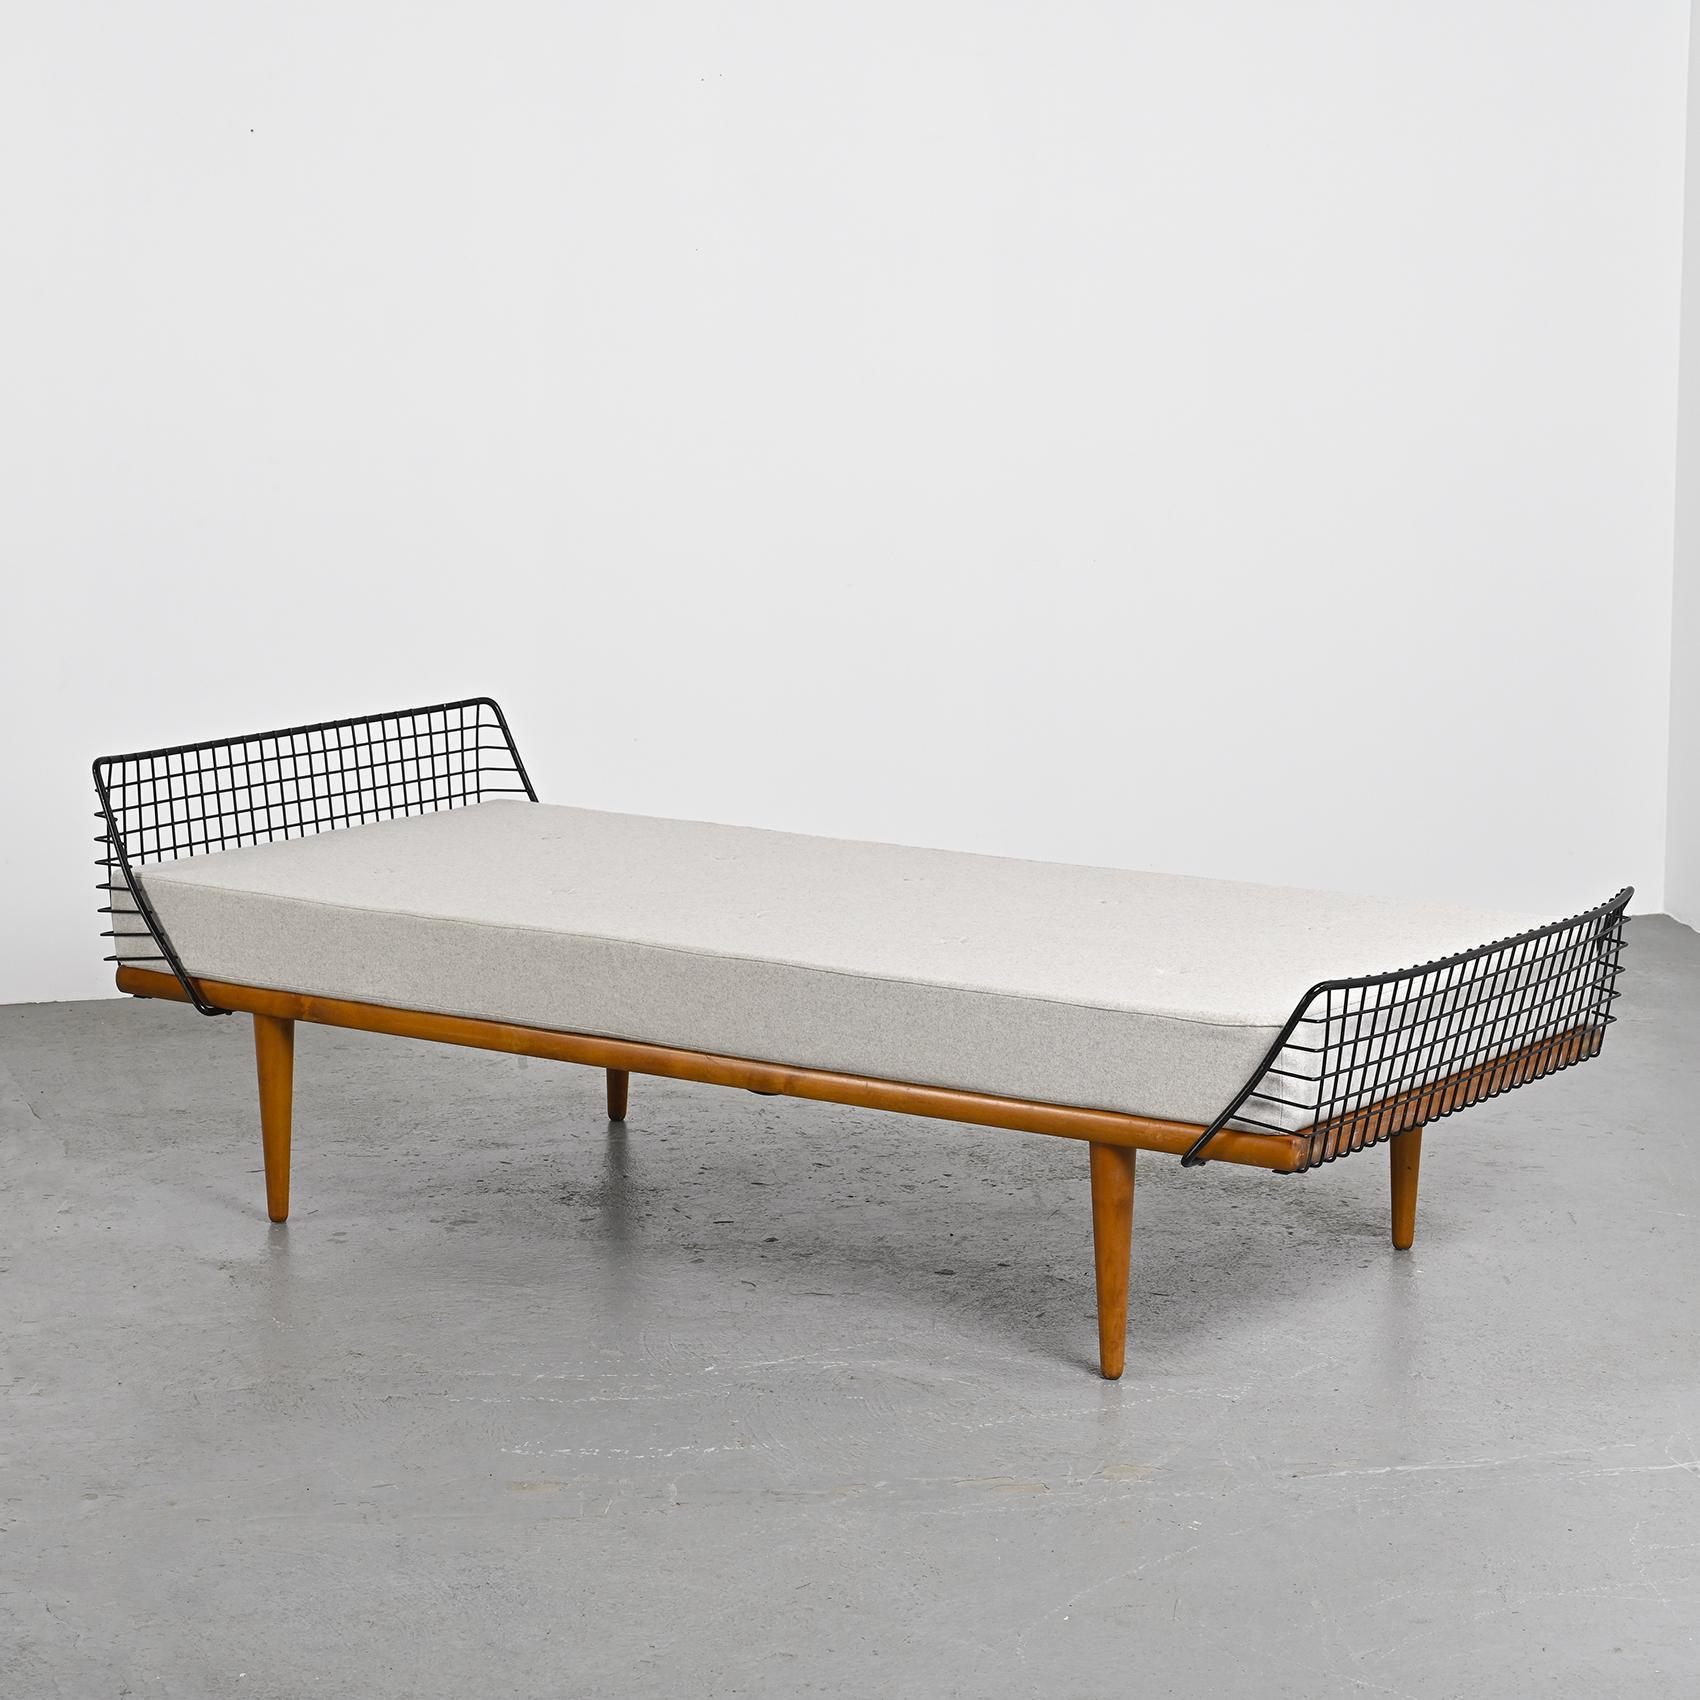 Modernistisches Daybed des schwedischen Designers Bengt Ruda aus den 1960er Jahren, das das charakteristische Design seiner Zeit verkörpert.

Der Rahmen aus Teakholz wird von vier anmutig verjüngten Beinen getragen. Kopf- und Fußteil sind mit einem